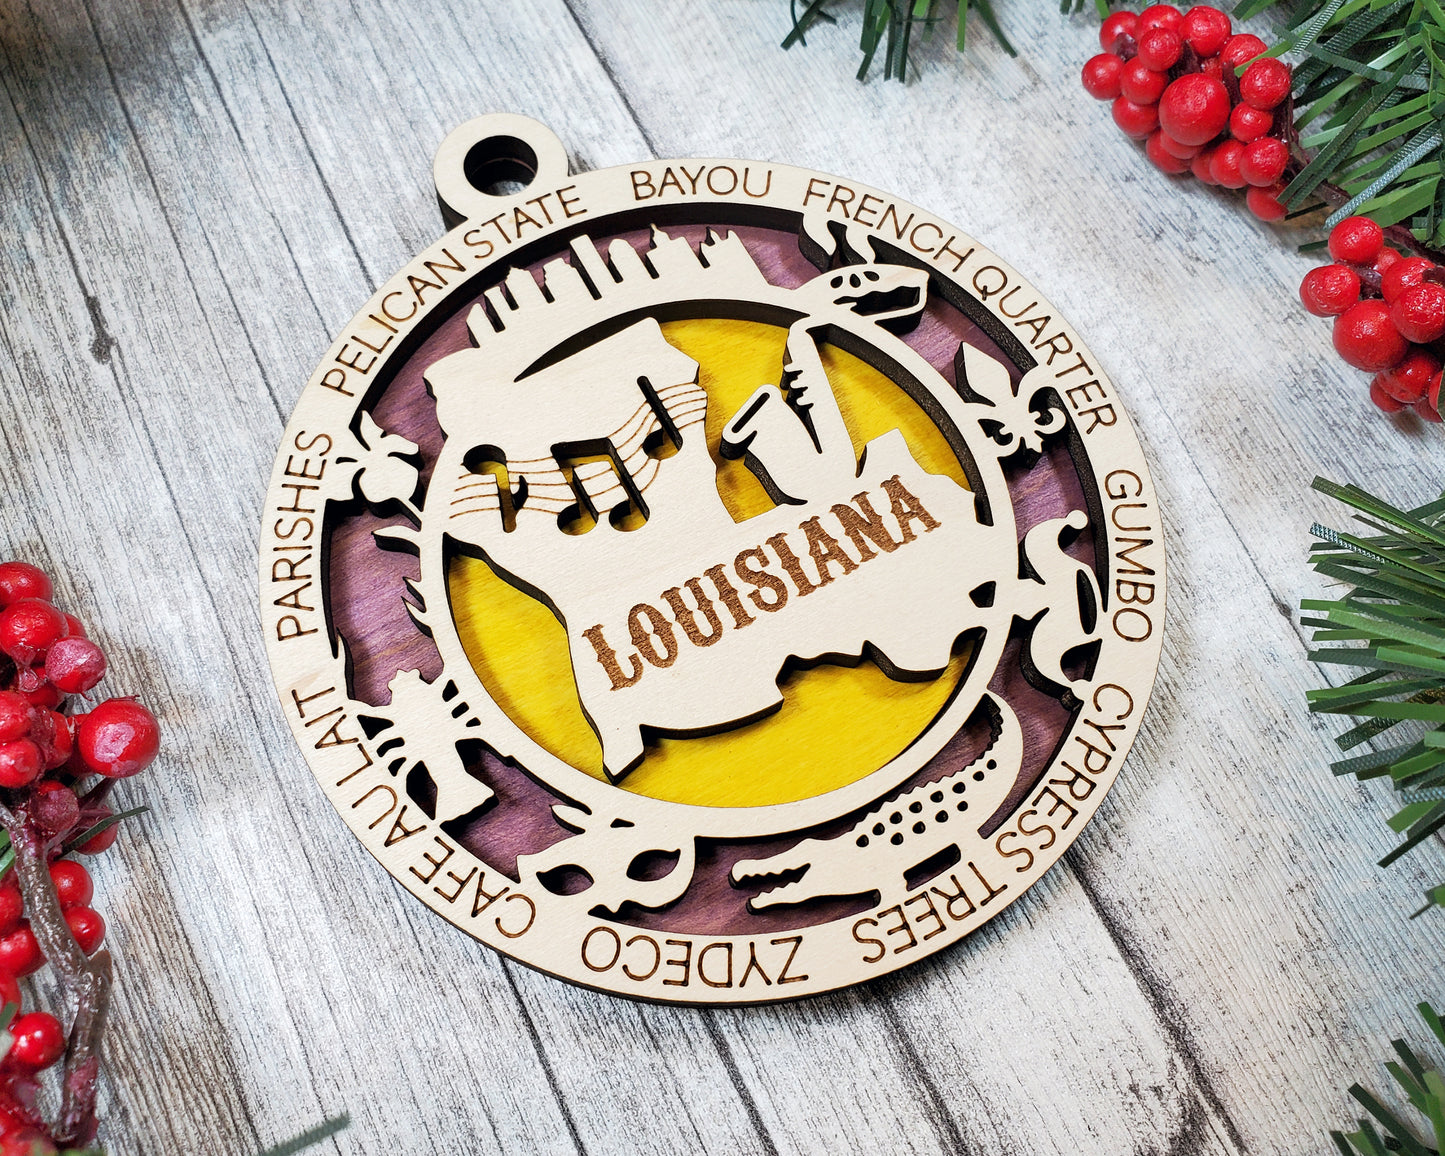 Louisiana Unique State Ornament